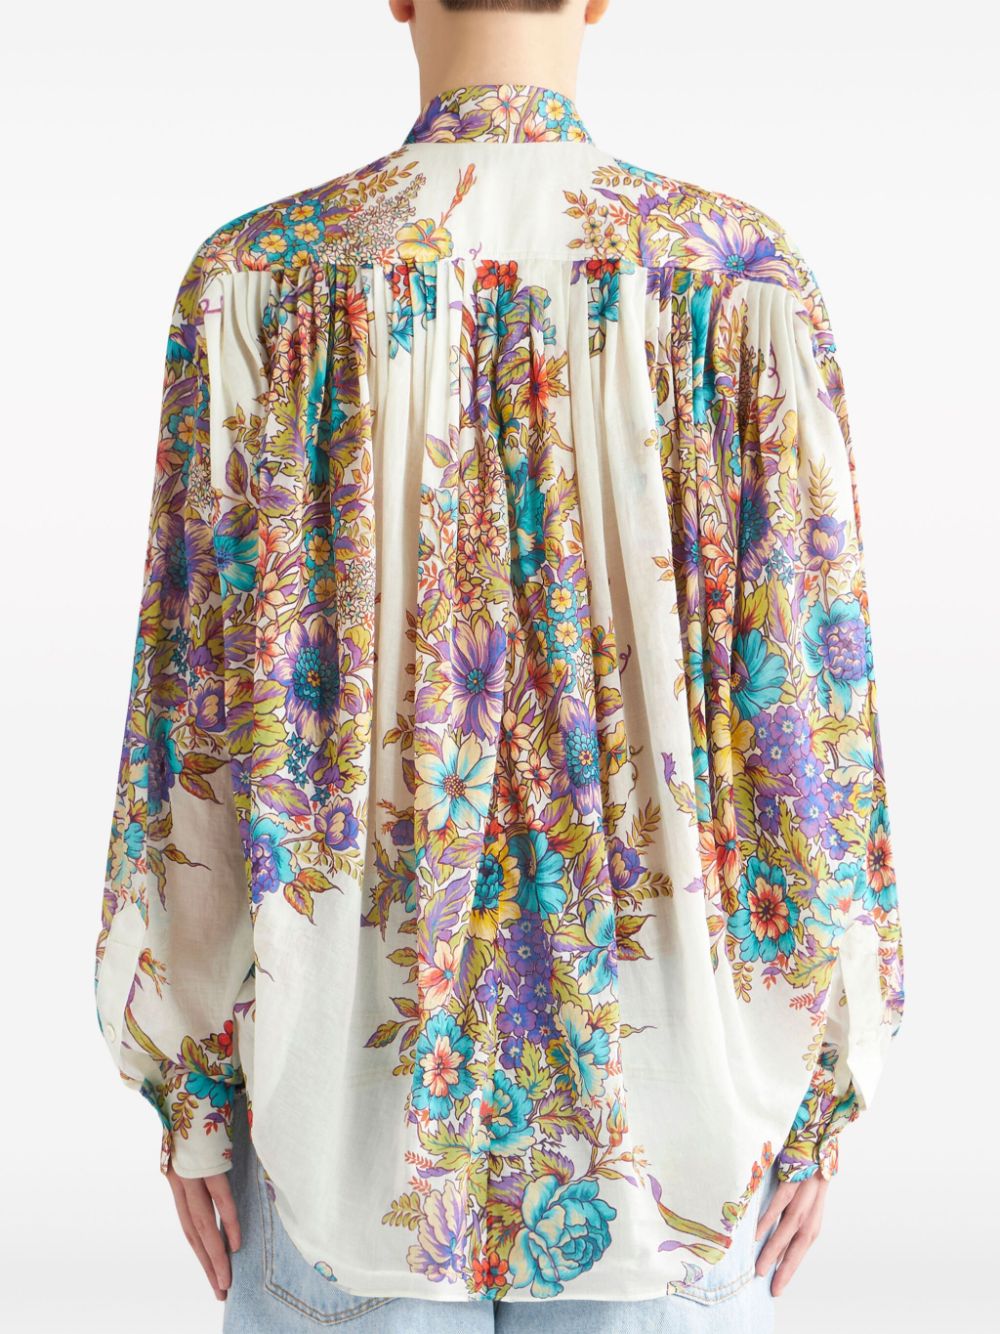 Floral-print cotton blouse<BR/><BR/><BR/>